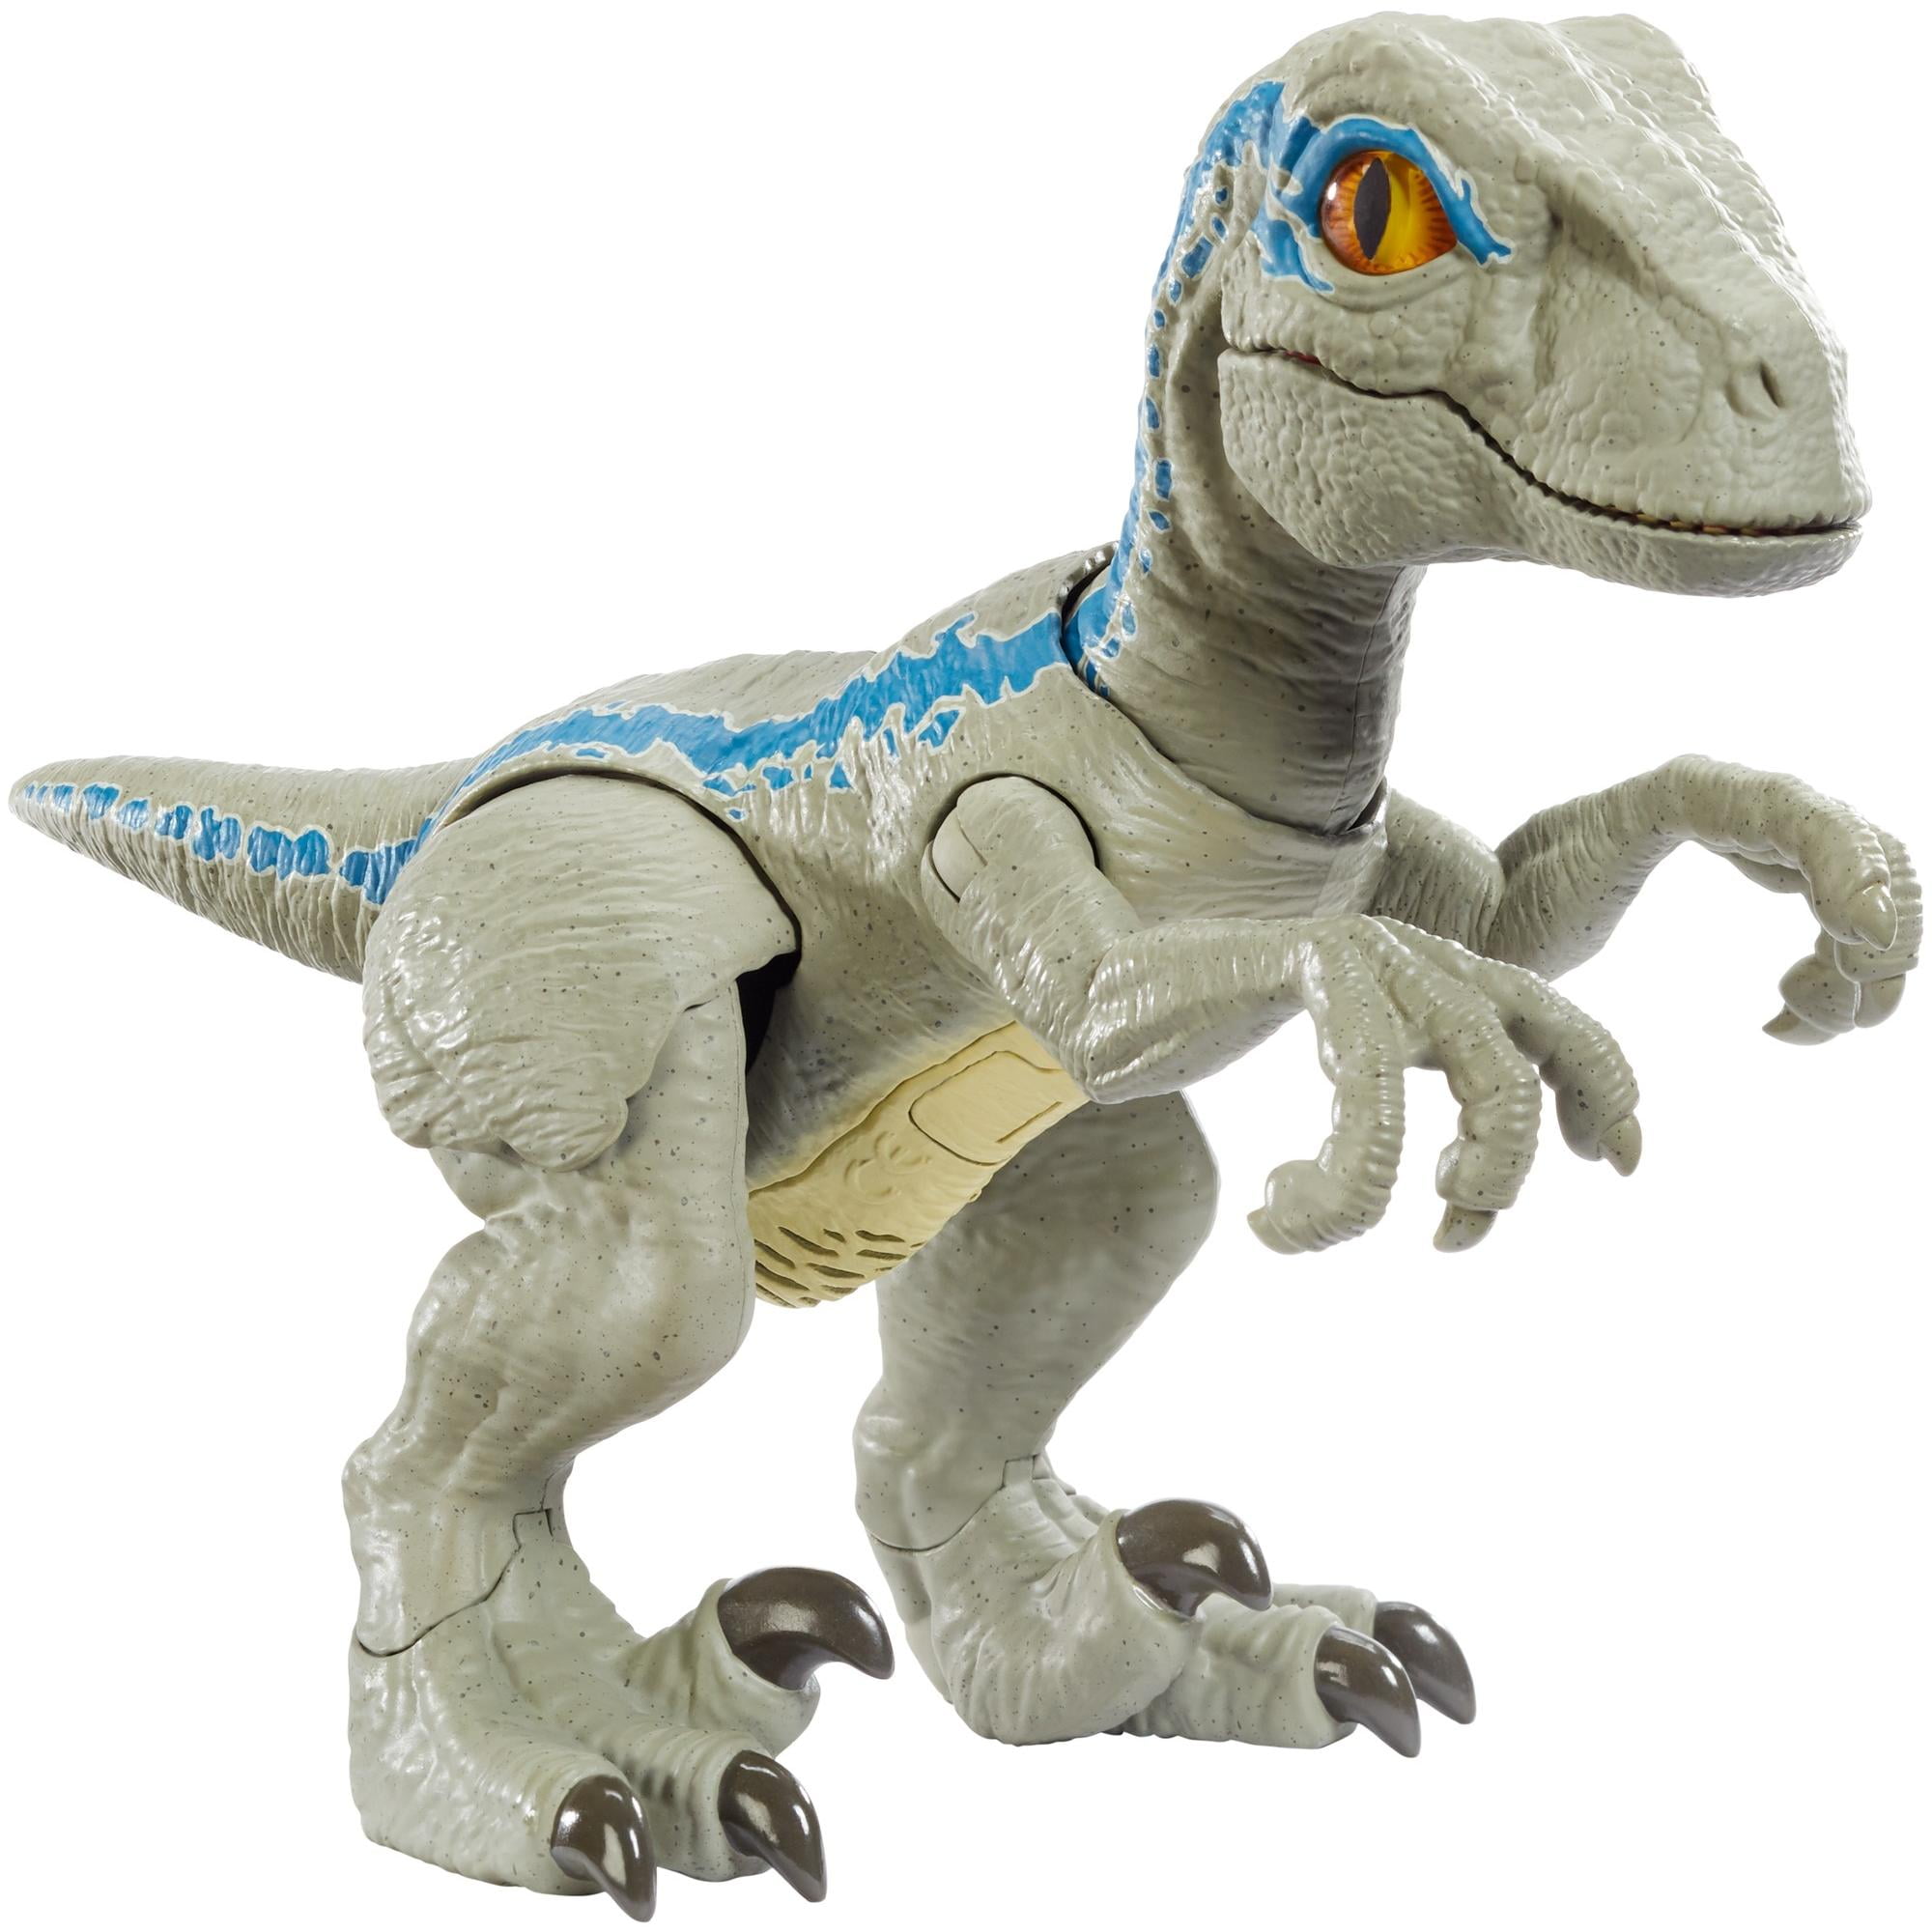 Blue Velociraptor Dinosaur Figure Toy Christmas Gift for Boys Kid Jurassic World 